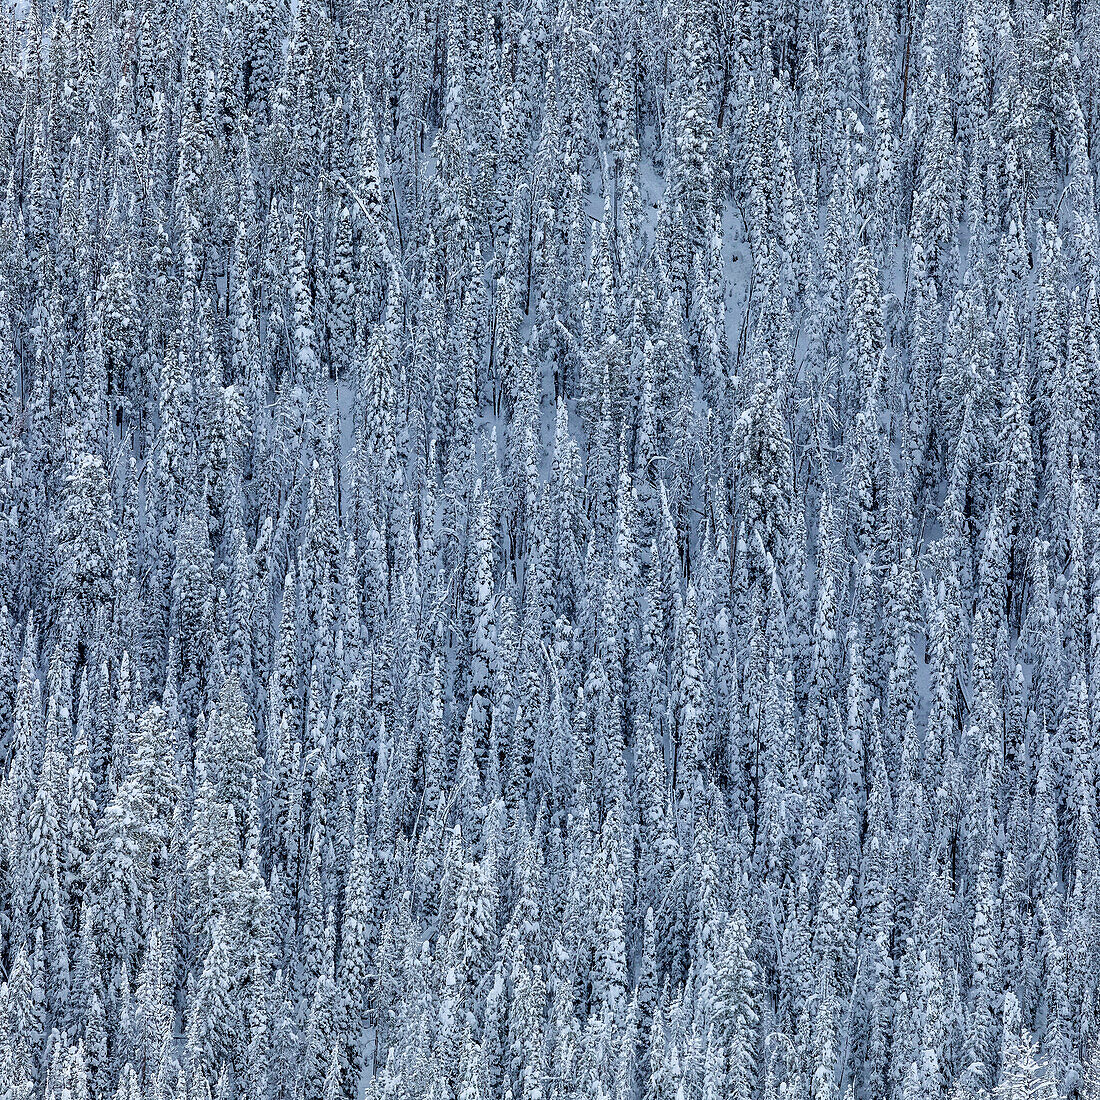 USA, Idaho, Ketchum, dichter verschneiter Wald im Winter